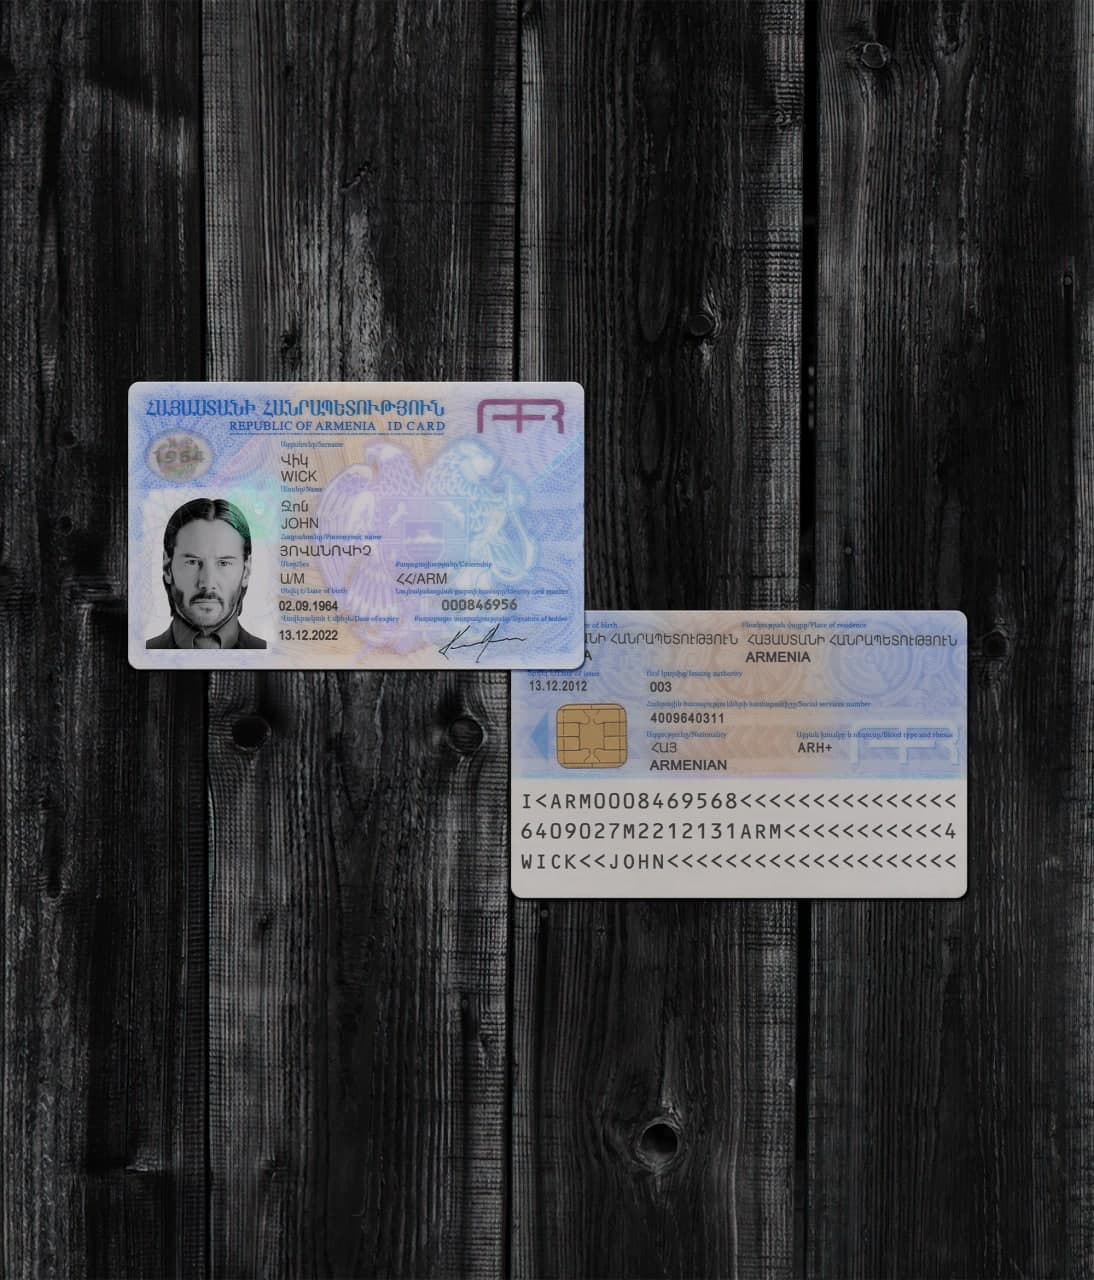 Armenia ID Card 2011+ PSD2